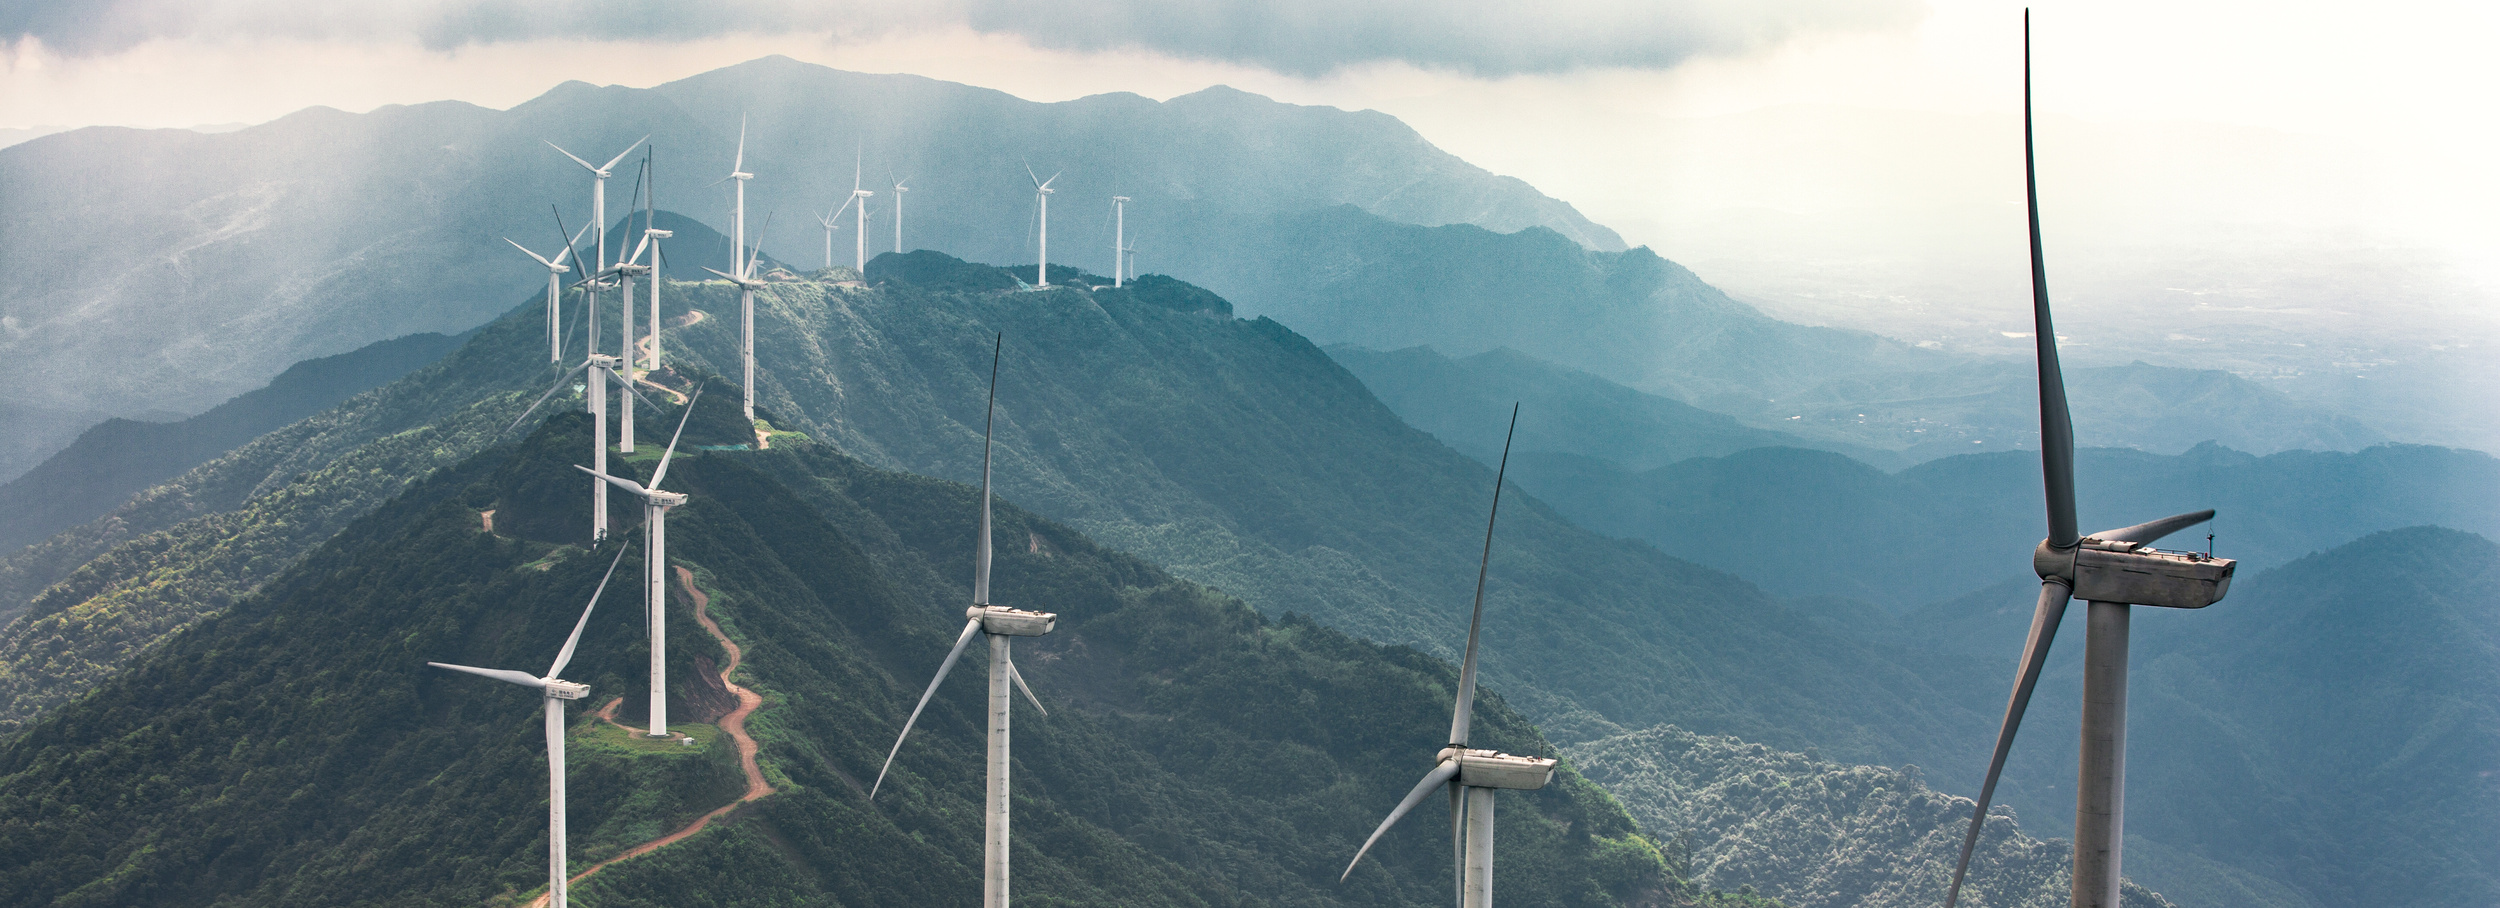 La Chine a accéléré sa production d'énergies vertes afin d'atteindre la neutralité carbone d'ici 2060.© hu, Adobe Stock